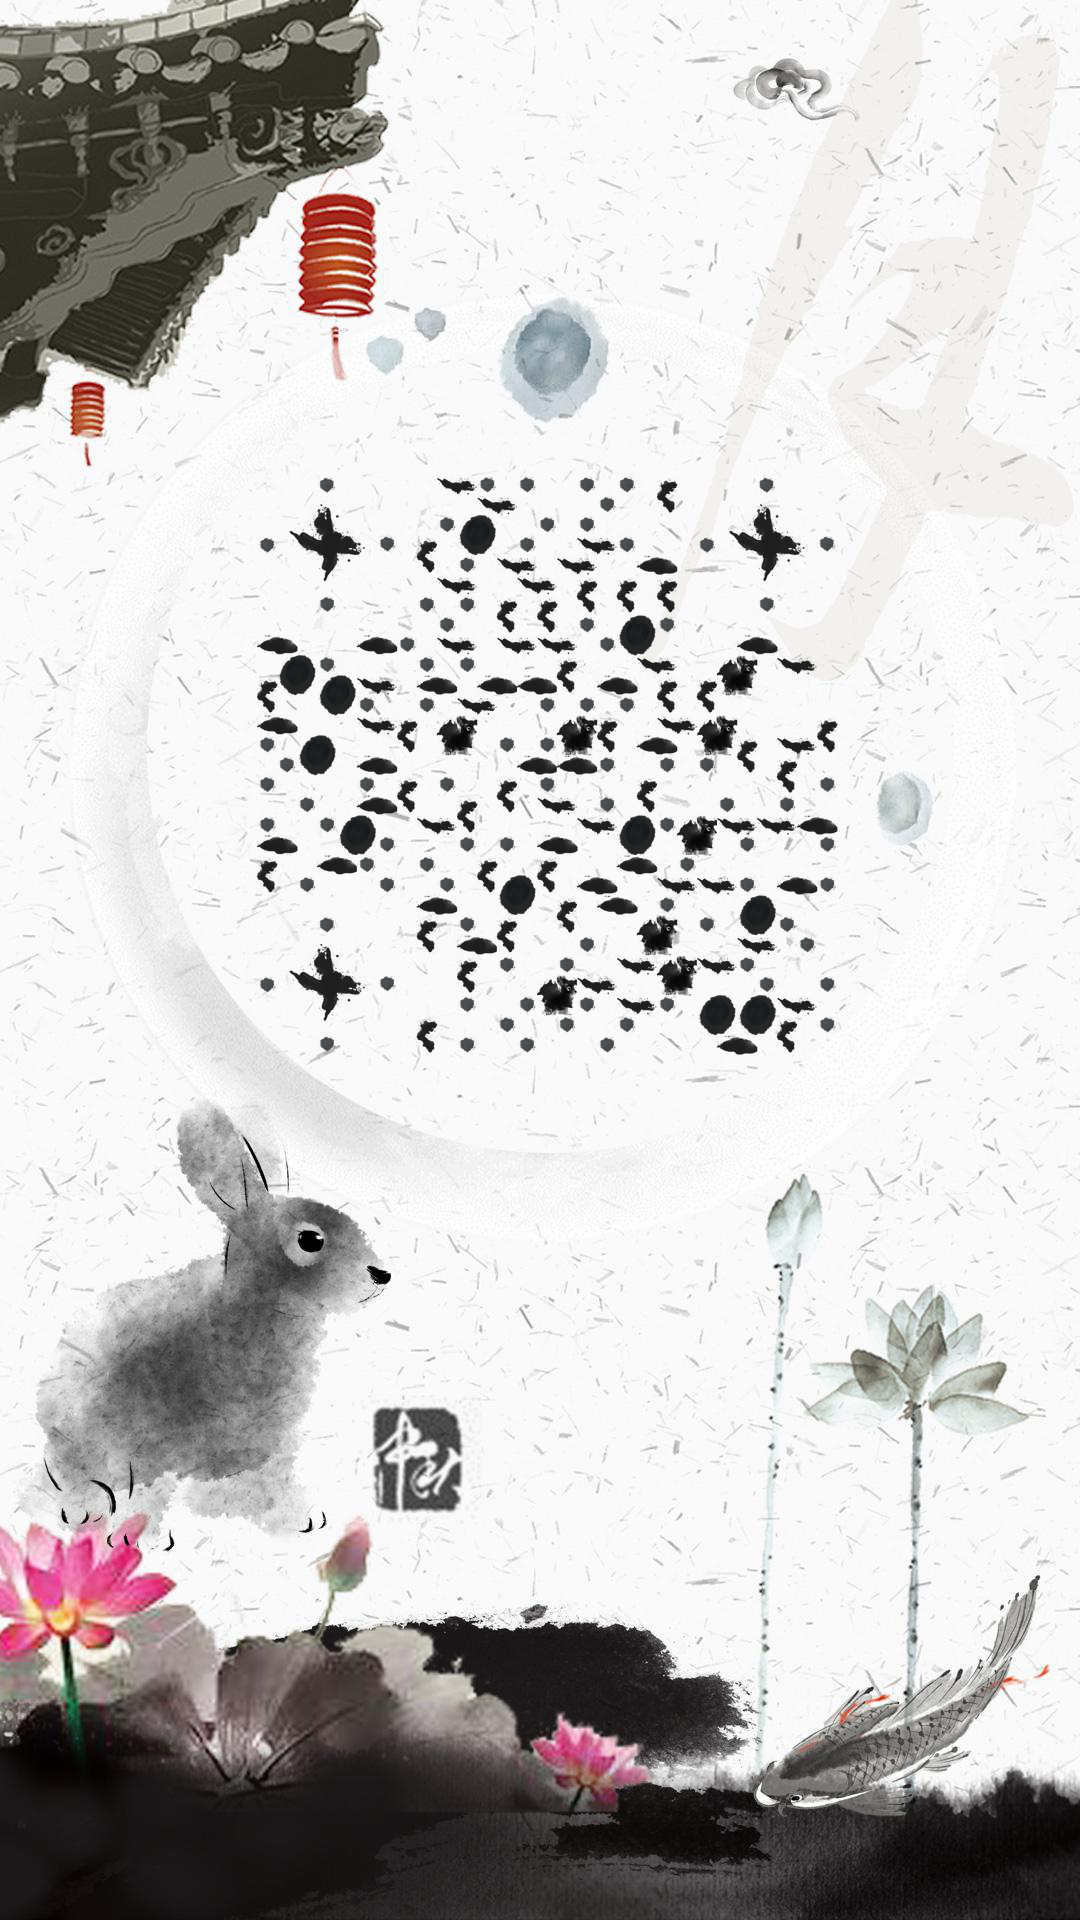 中秋水墨画兔子荷花池塘风景二维码生成器-平面静态-手机壁纸